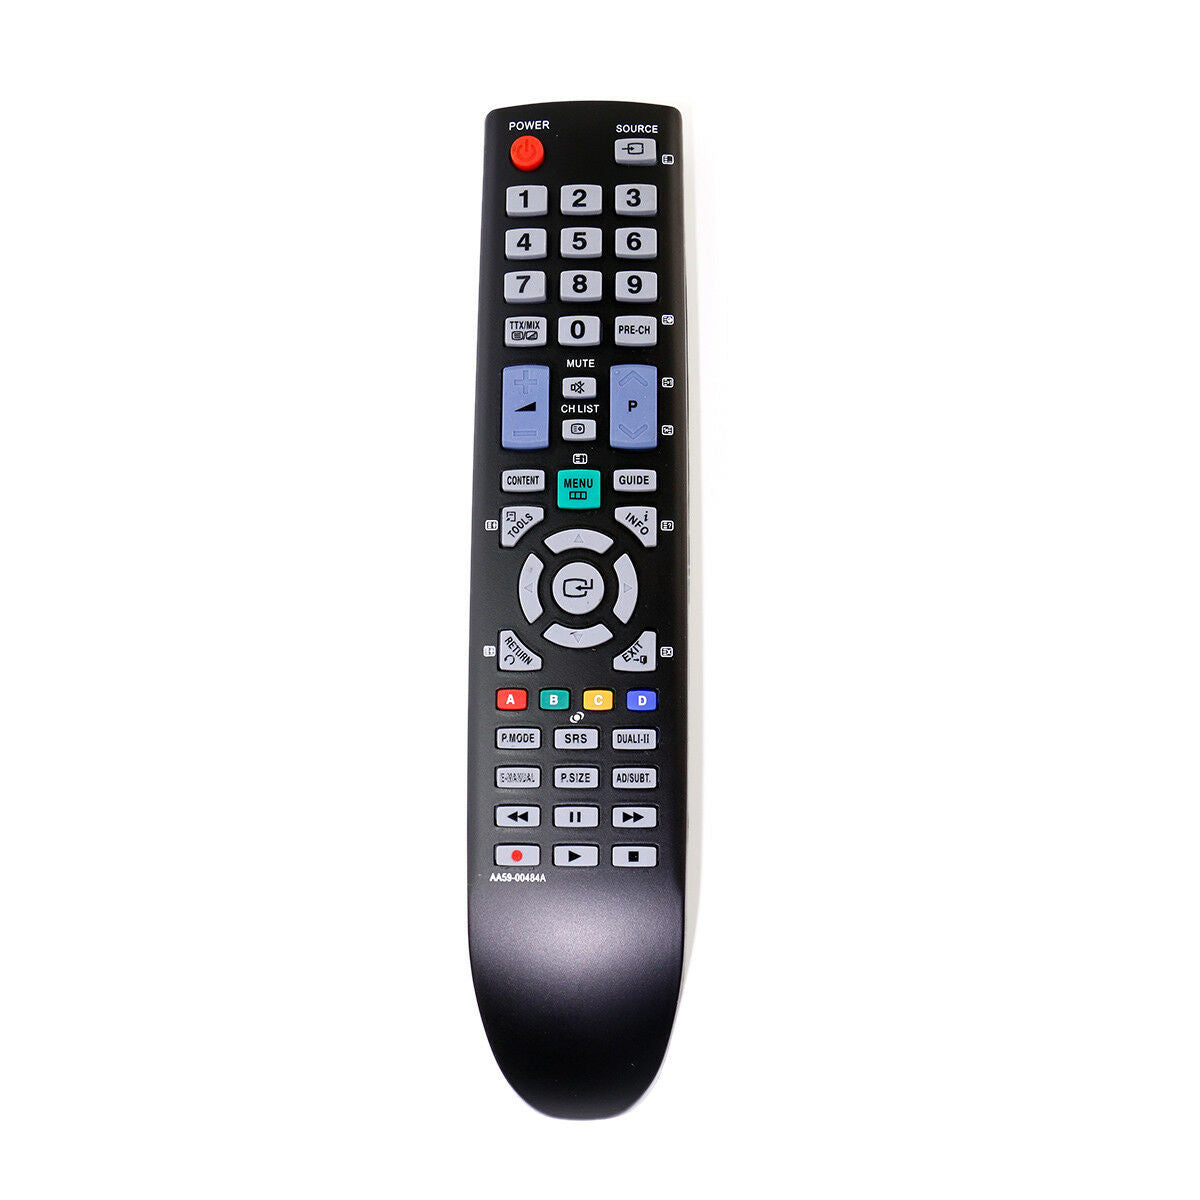 AA59-00484A Replacement Remote Control for Samsung TV LE37D550 LE37D580 LE40D550